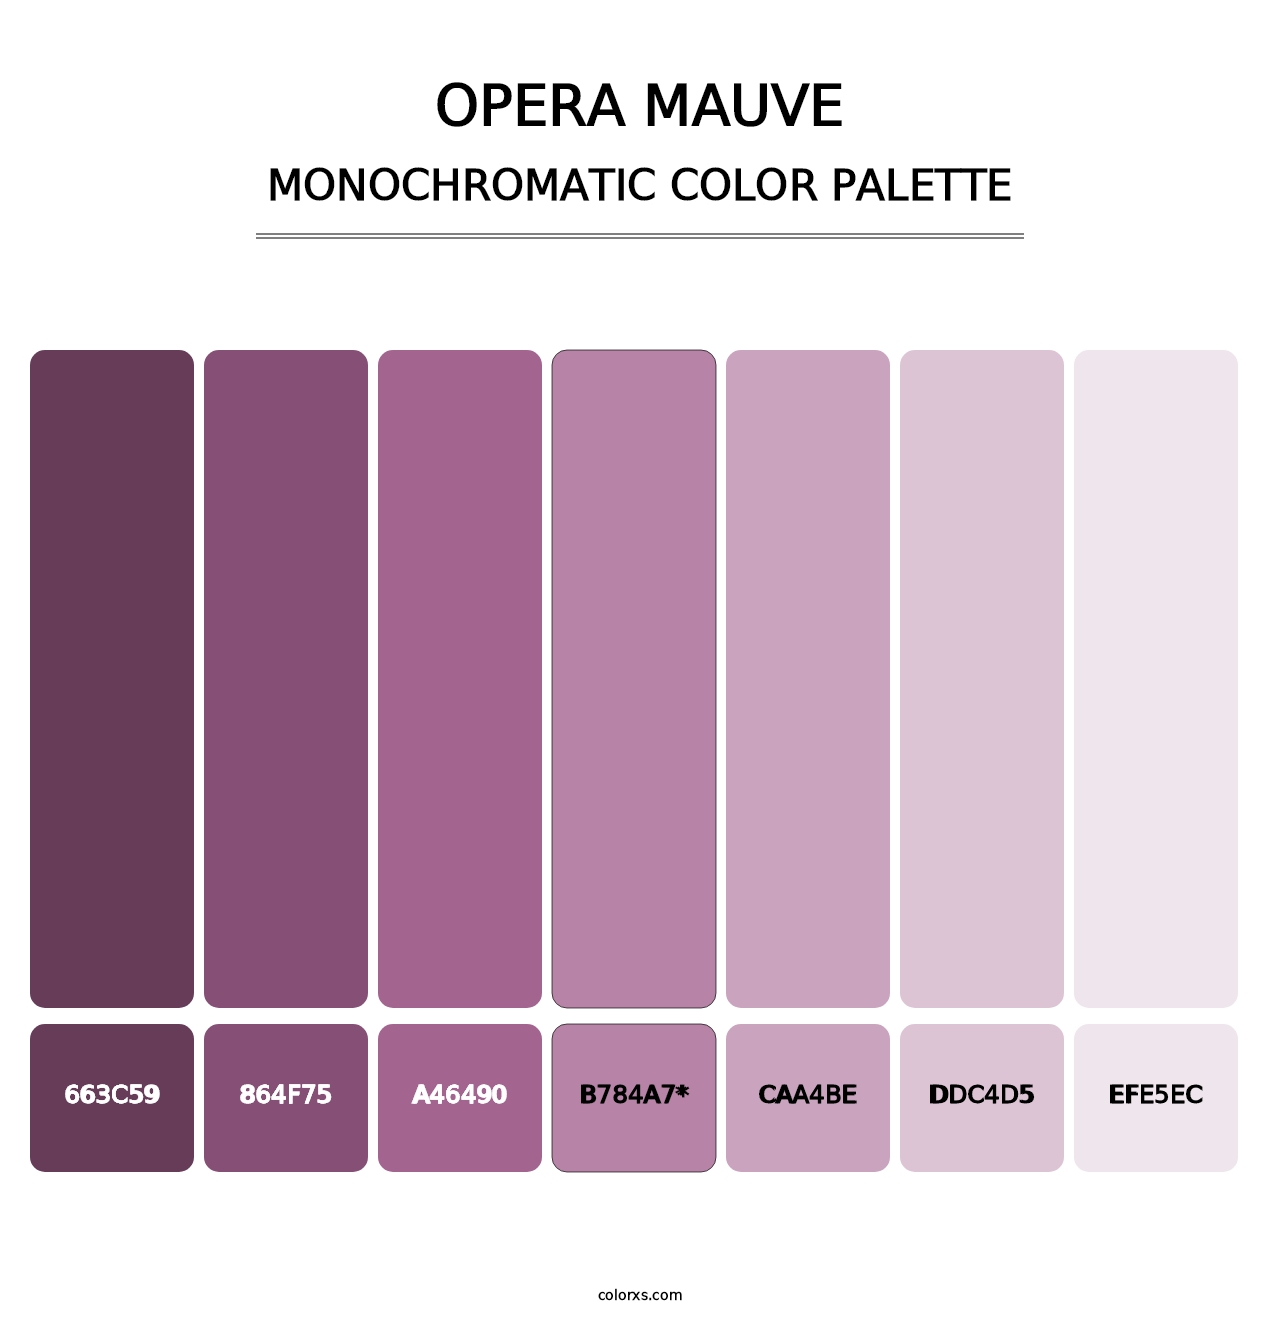 Opera Mauve - Monochromatic Color Palette